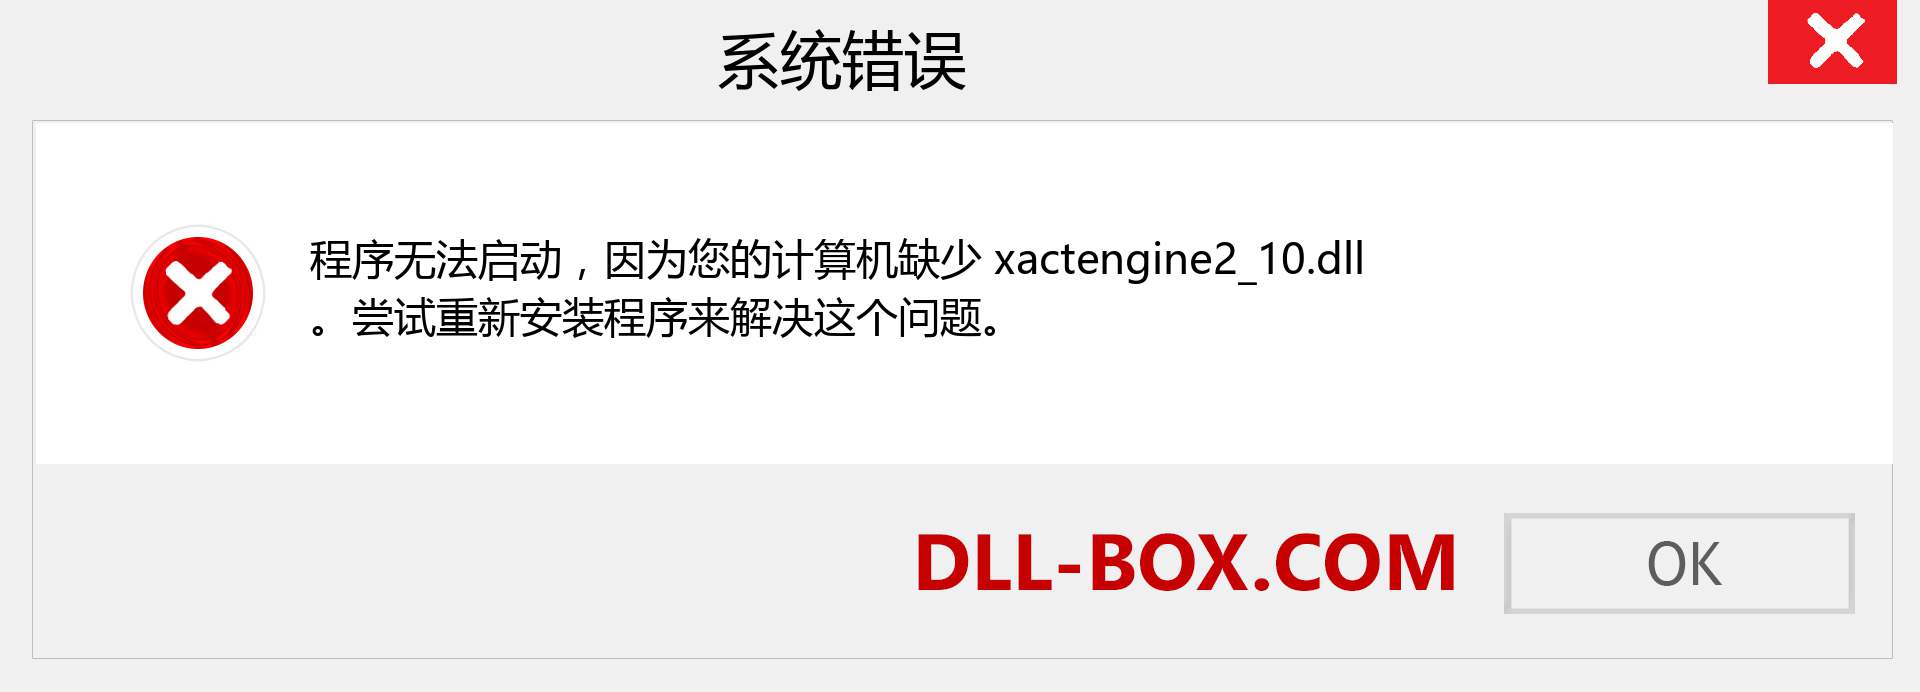 xactengine2_10.dll 文件丢失？。 适用于 Windows 7、8、10 的下载 - 修复 Windows、照片、图像上的 xactengine2_10 dll 丢失错误